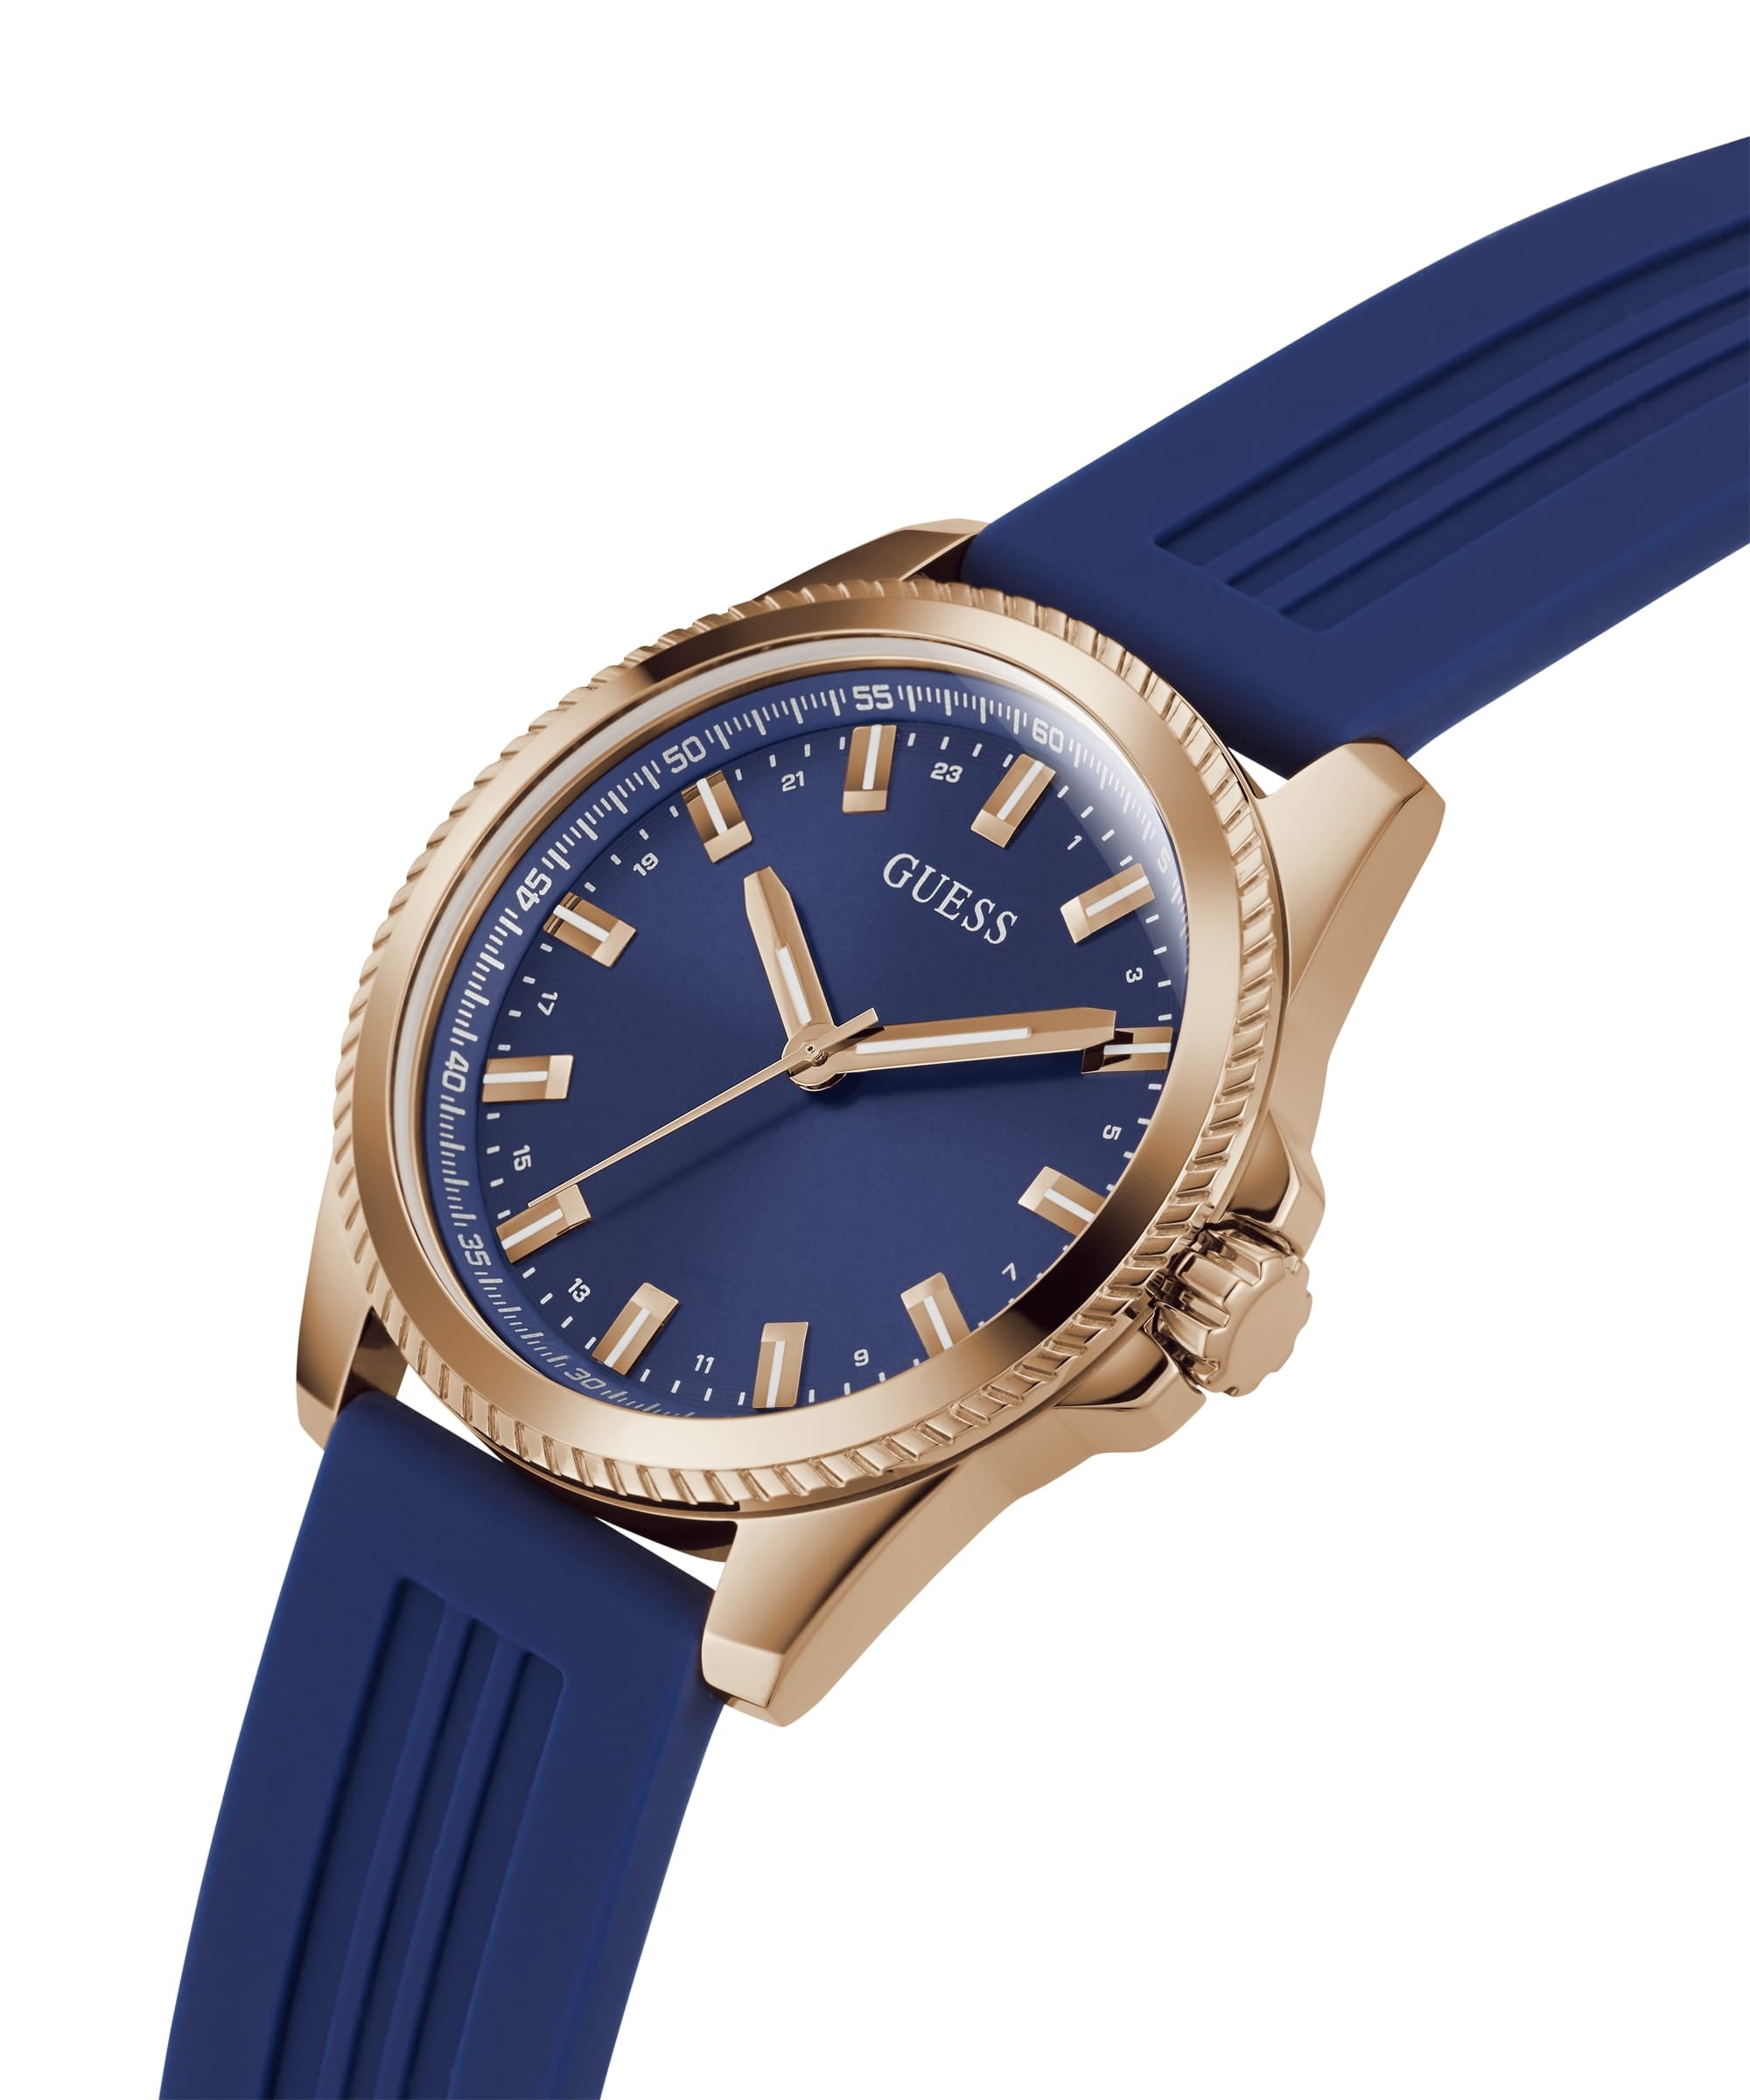 Guess Blue GW0202 – Phoenix Tonneau Men Watch - Multi-Function Case Watches Just Dial